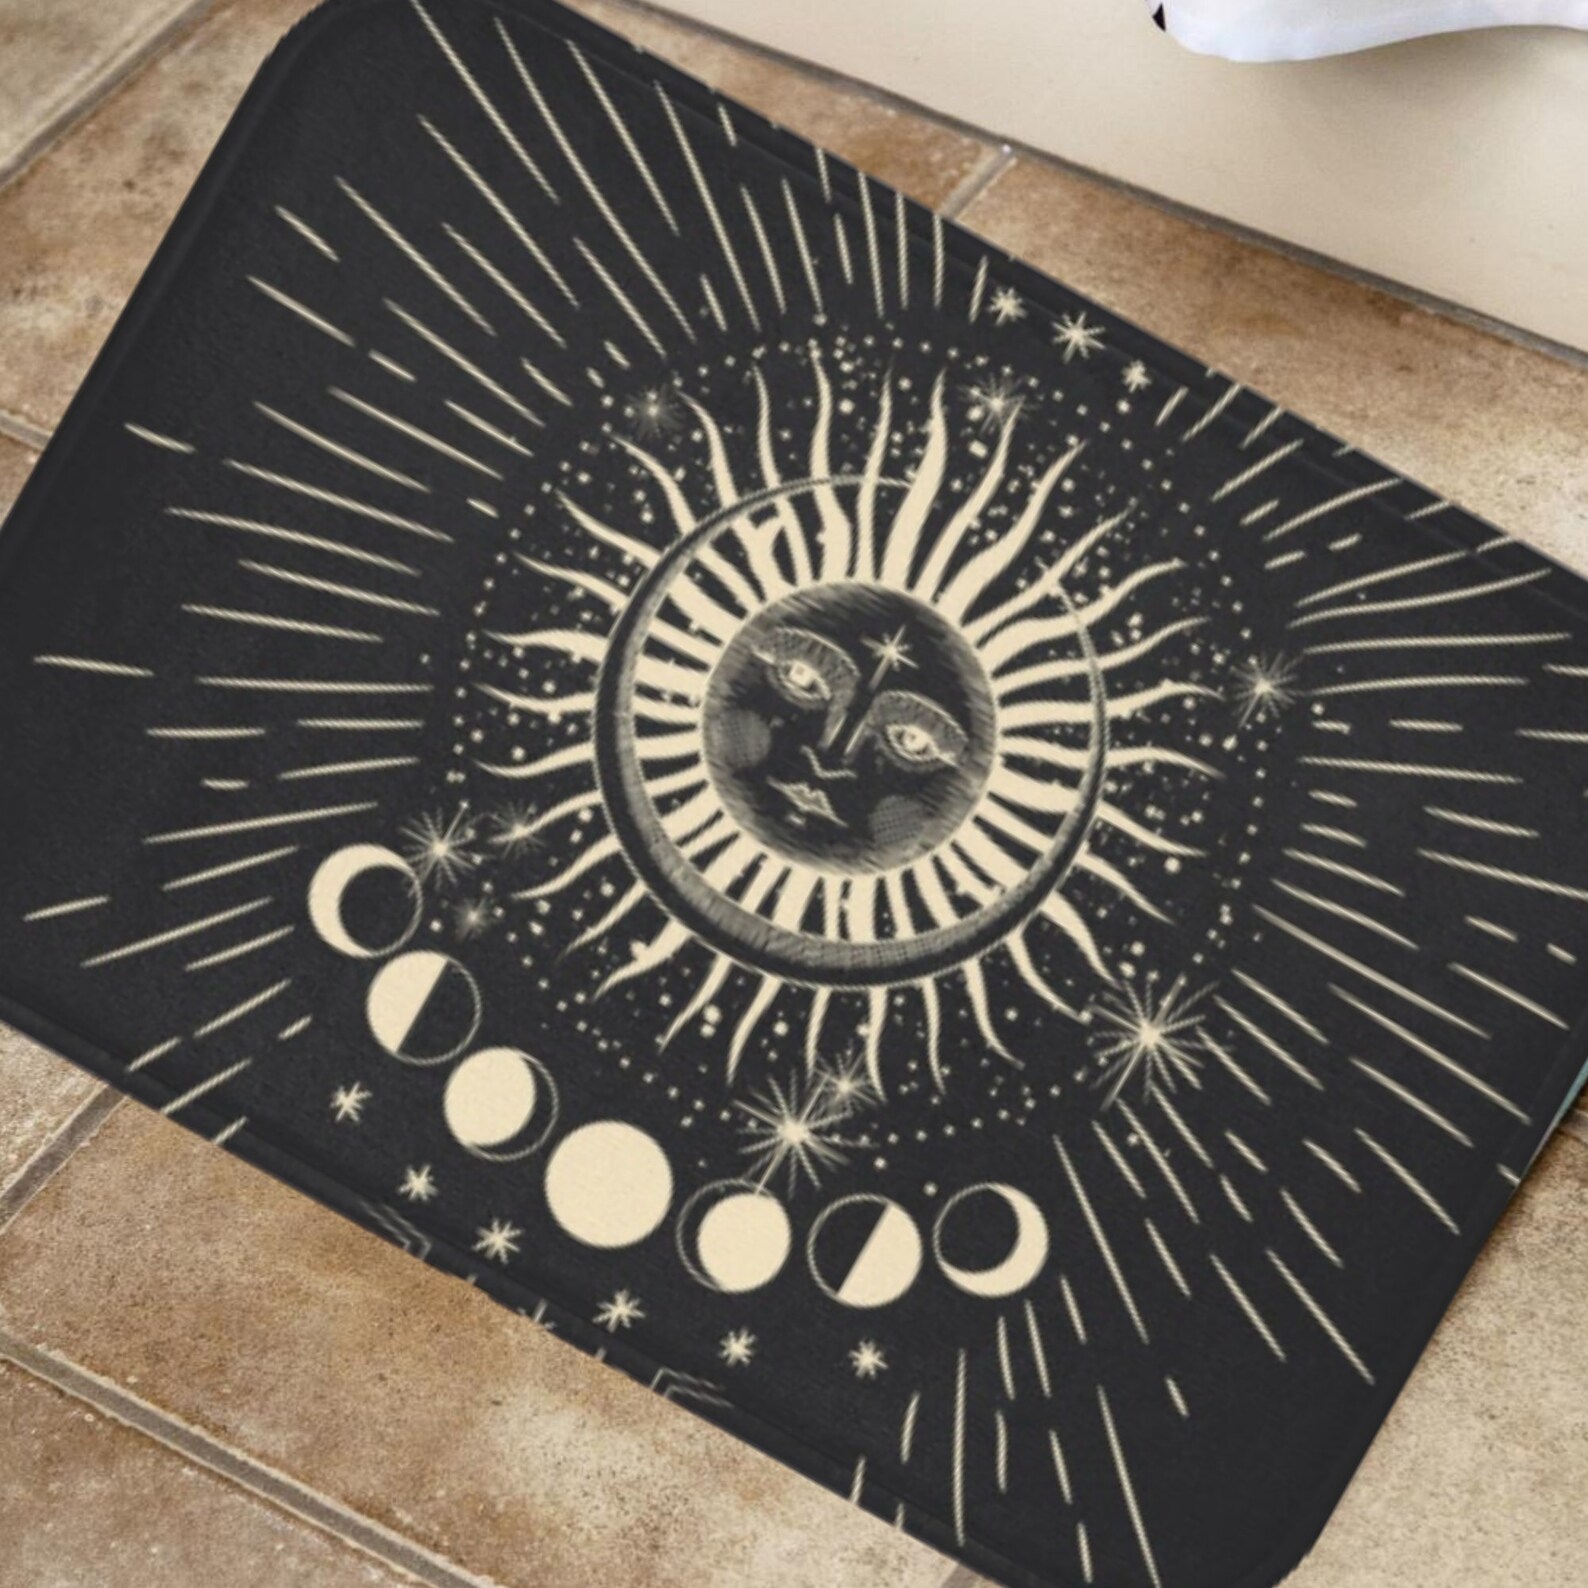 Astrology Bath mat Celestial Bathroom Decor Black moon and | Etsy